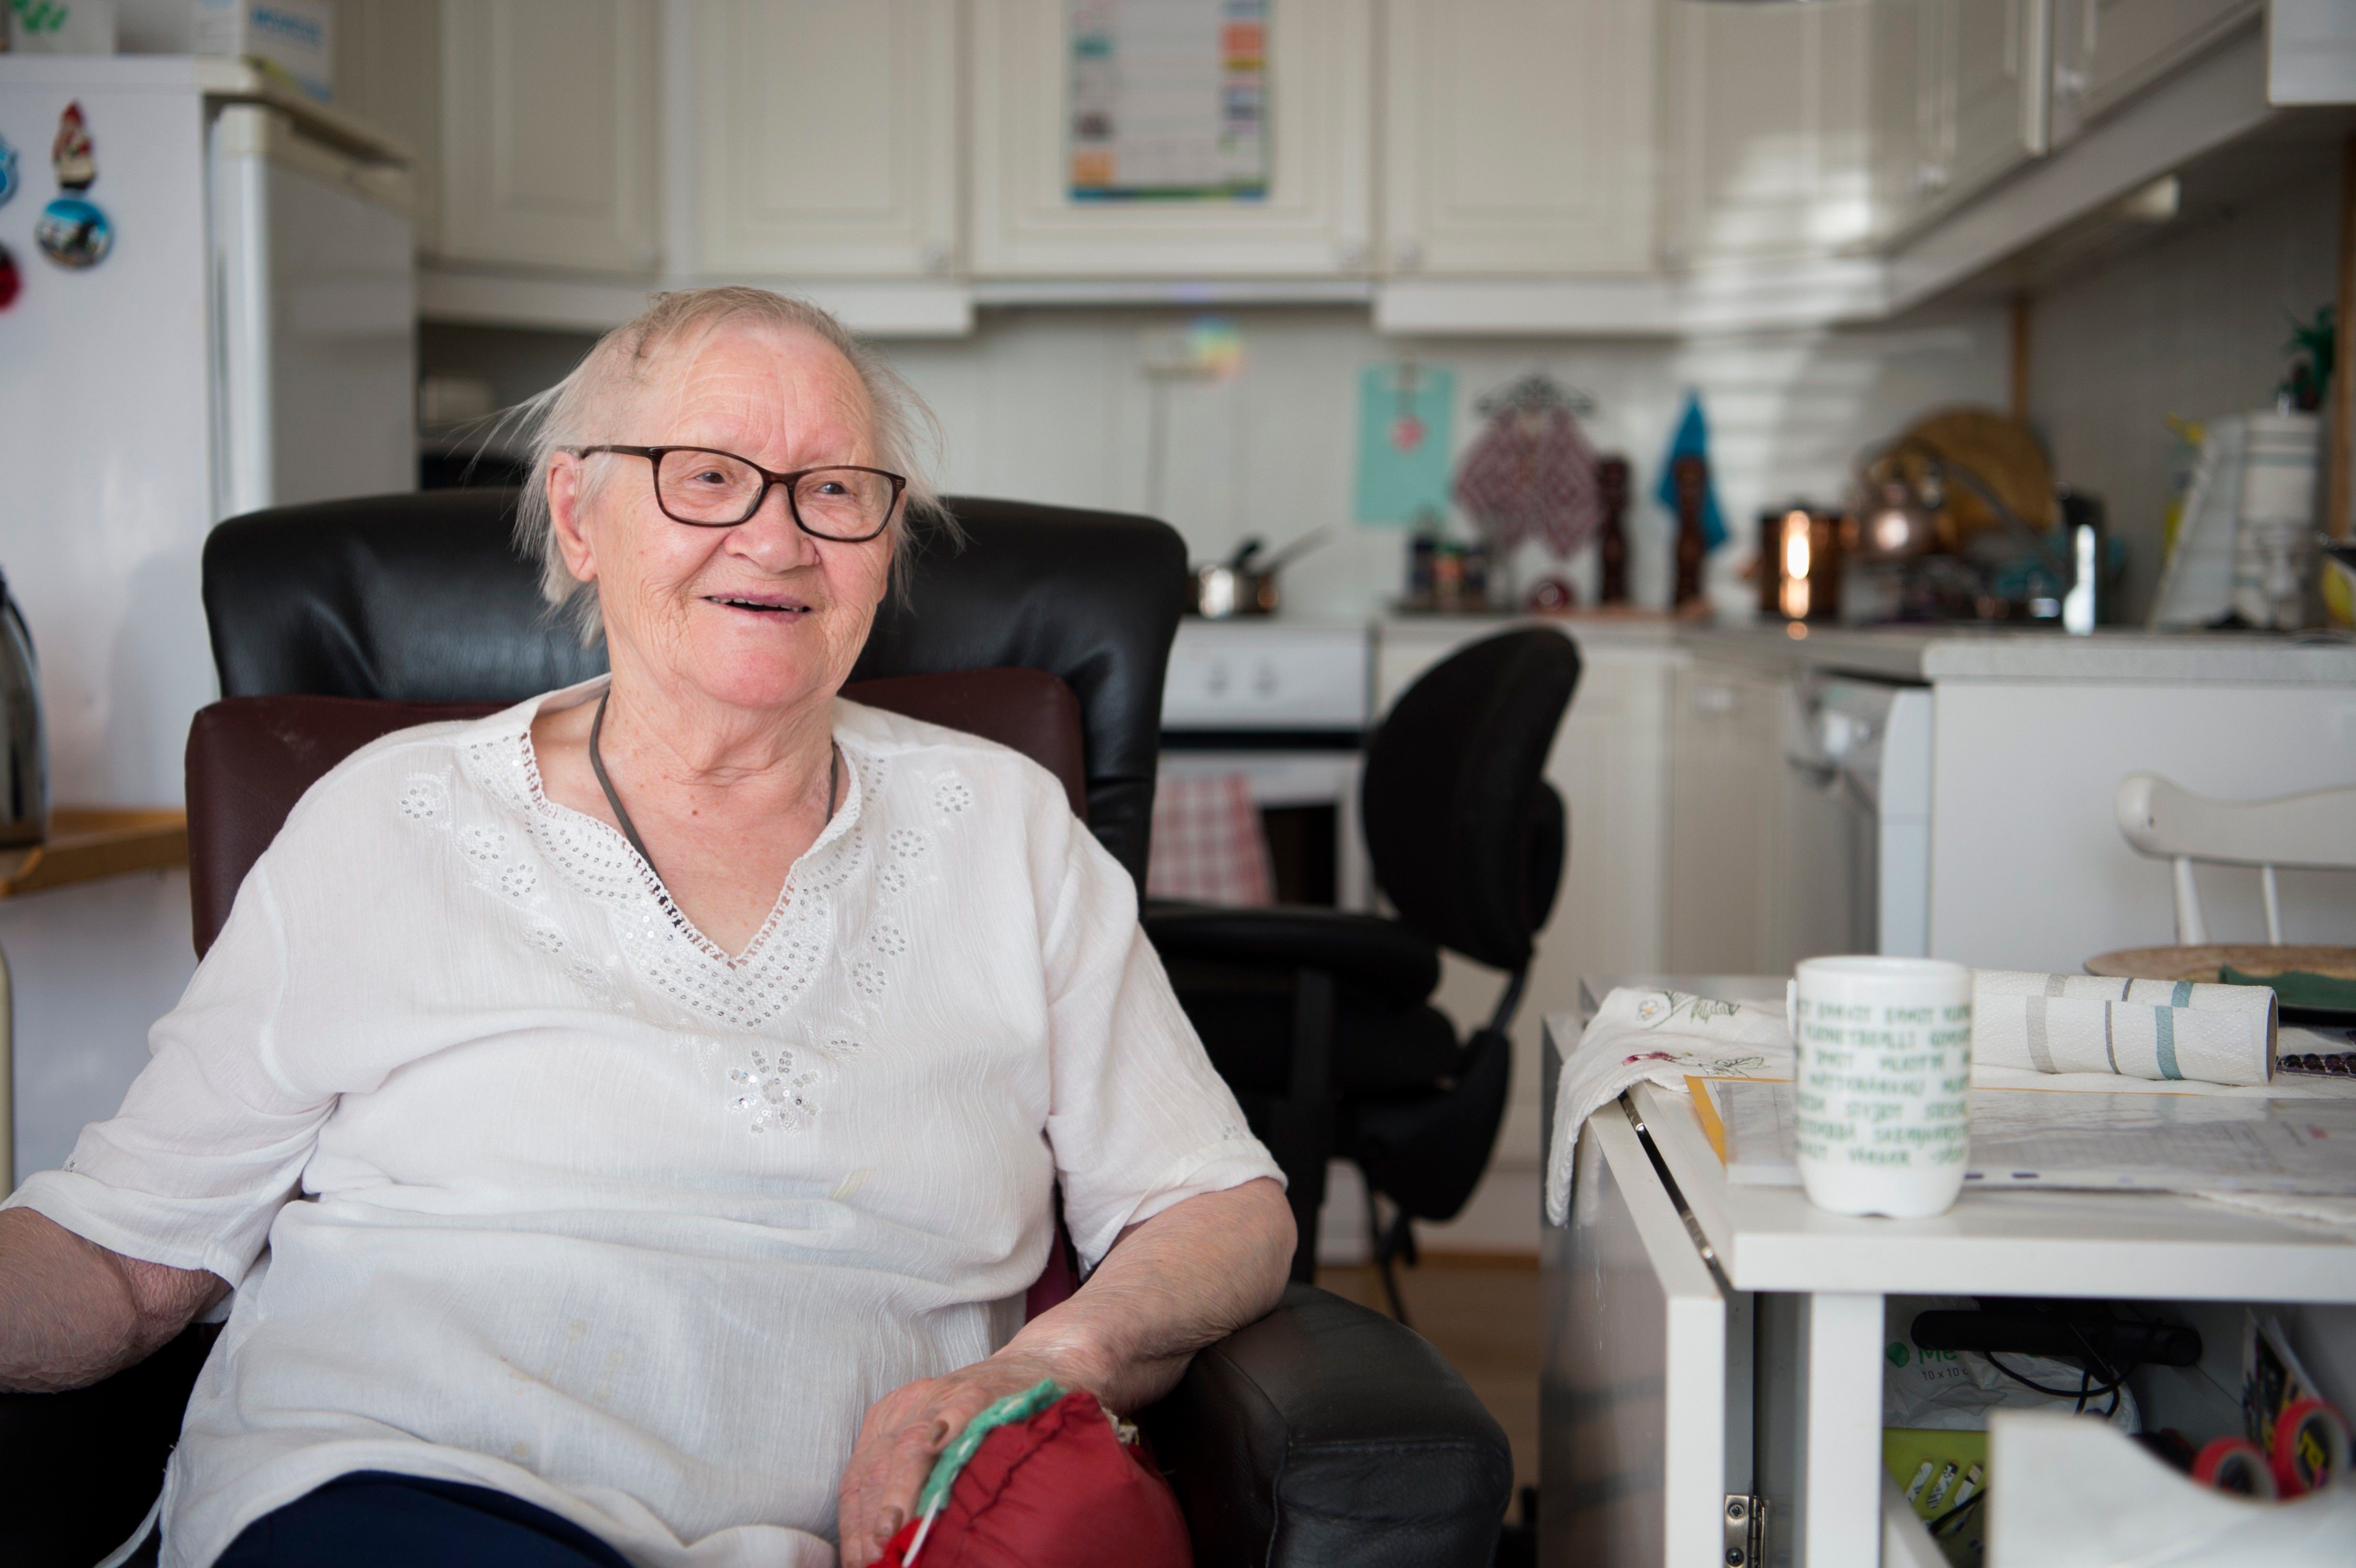 
Oddlaug Andersen er raus med smil, latter og historier fra sitt 92 år lange liv. I møtet med helsevesenet har hun opplevd gleden over å bli sett med hele sin samiske identitet, men hun har også opplevd utfordringer og hatt vanskelige møter på grunn av språkproblemer.
